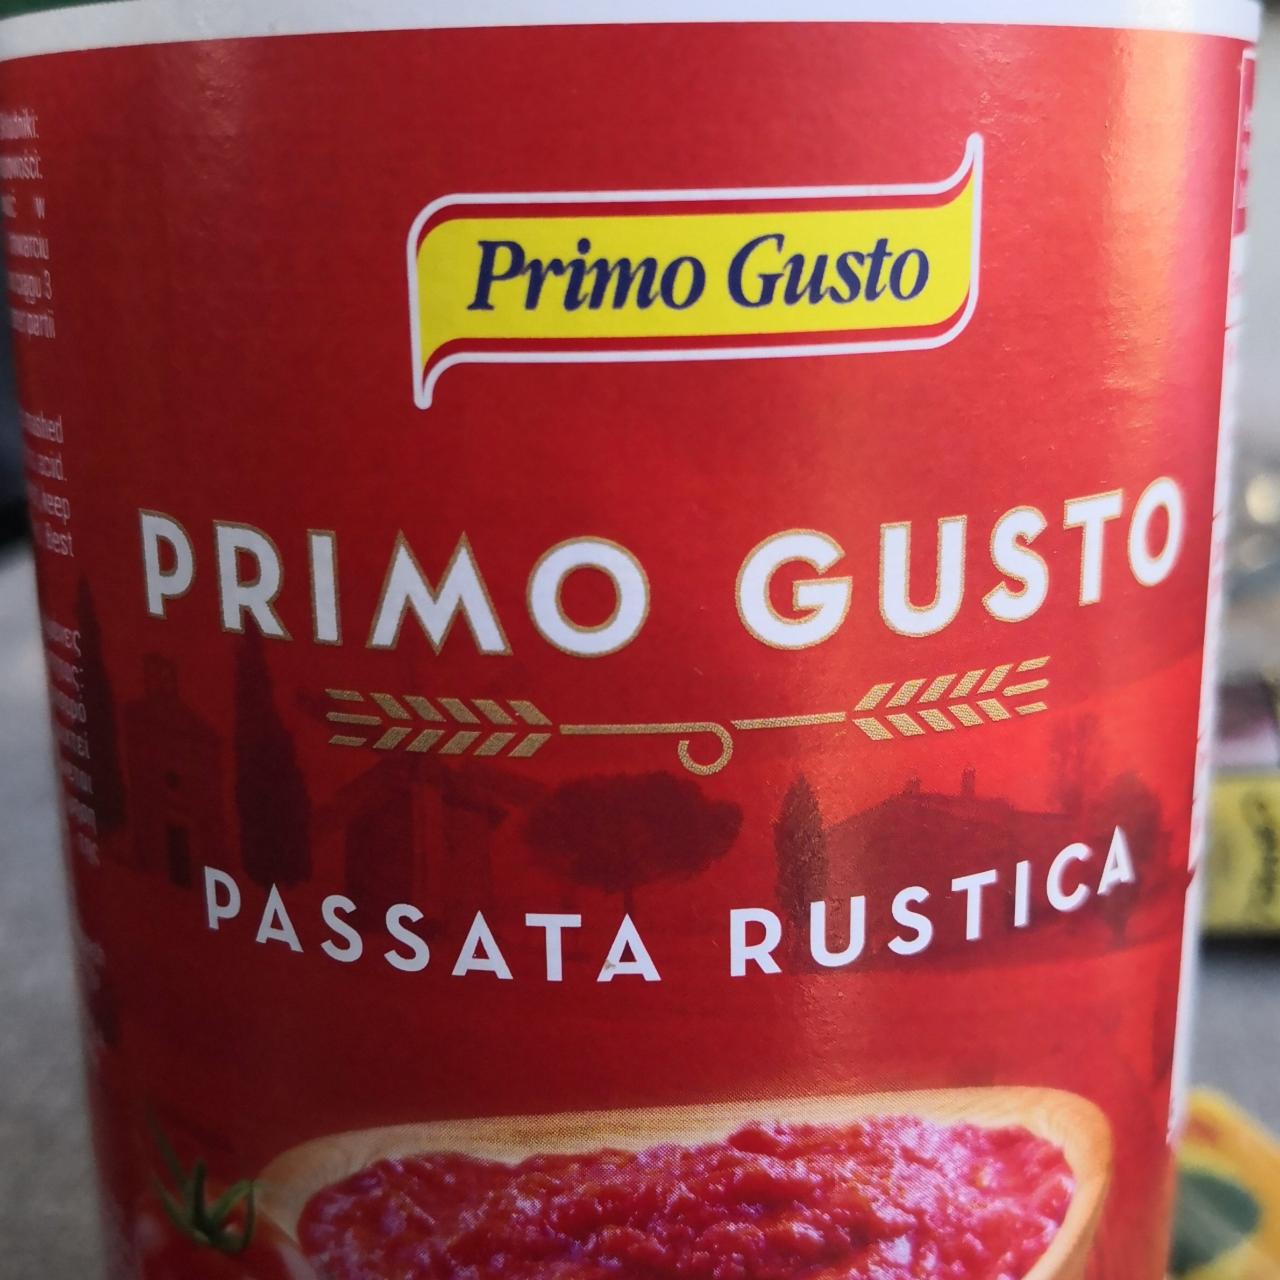 Zdjęcia - Primo Gusto Passata rustica